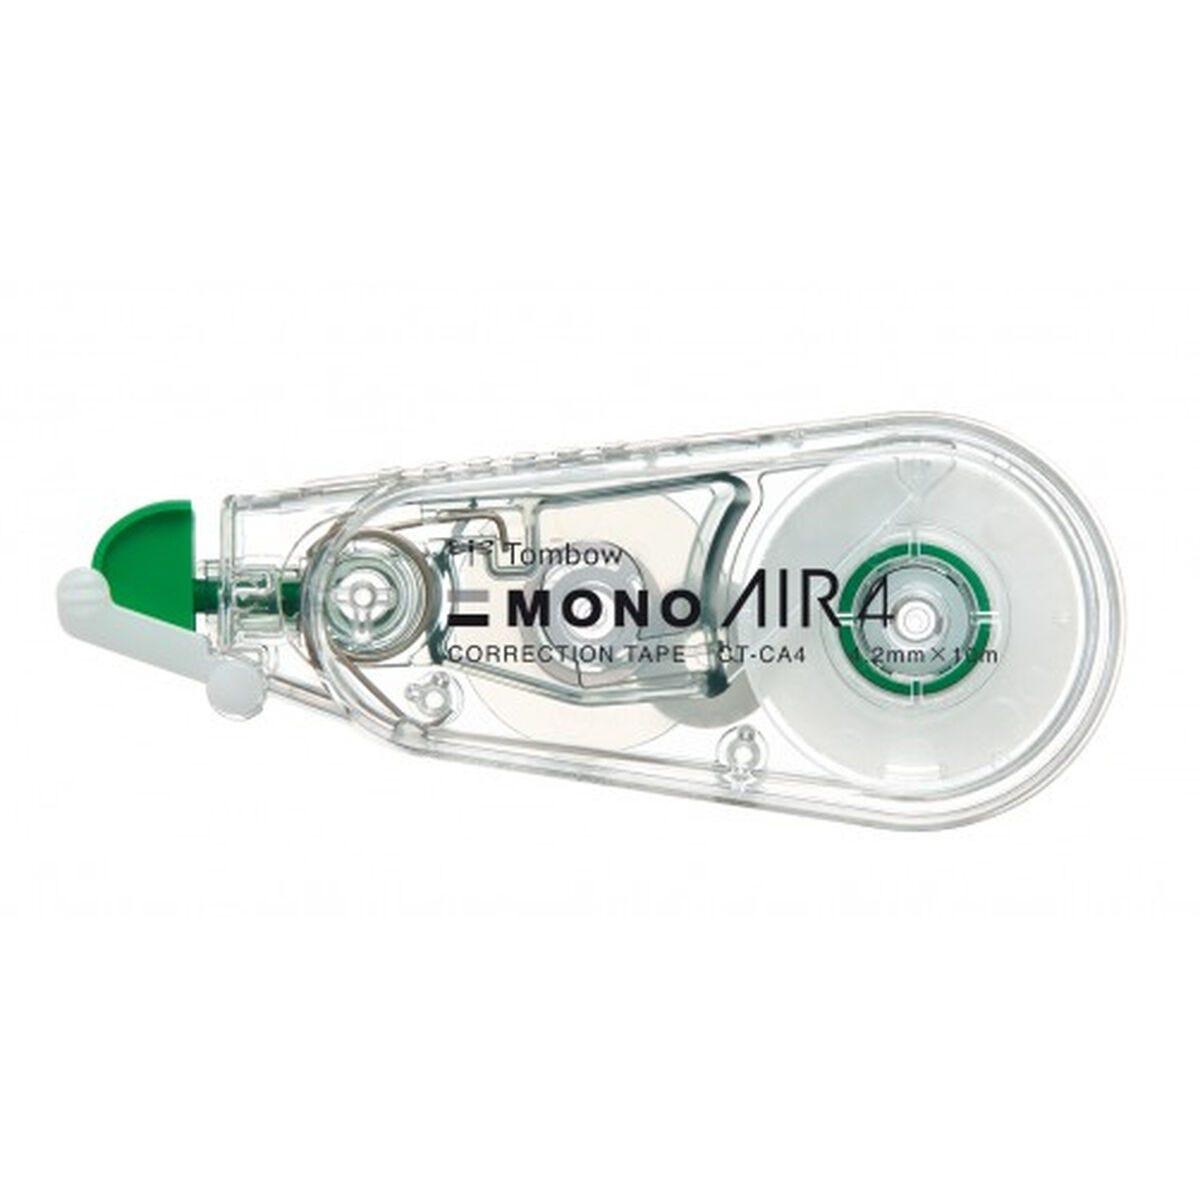 Roller correcteur Tombow Mono Air (20 Unités)